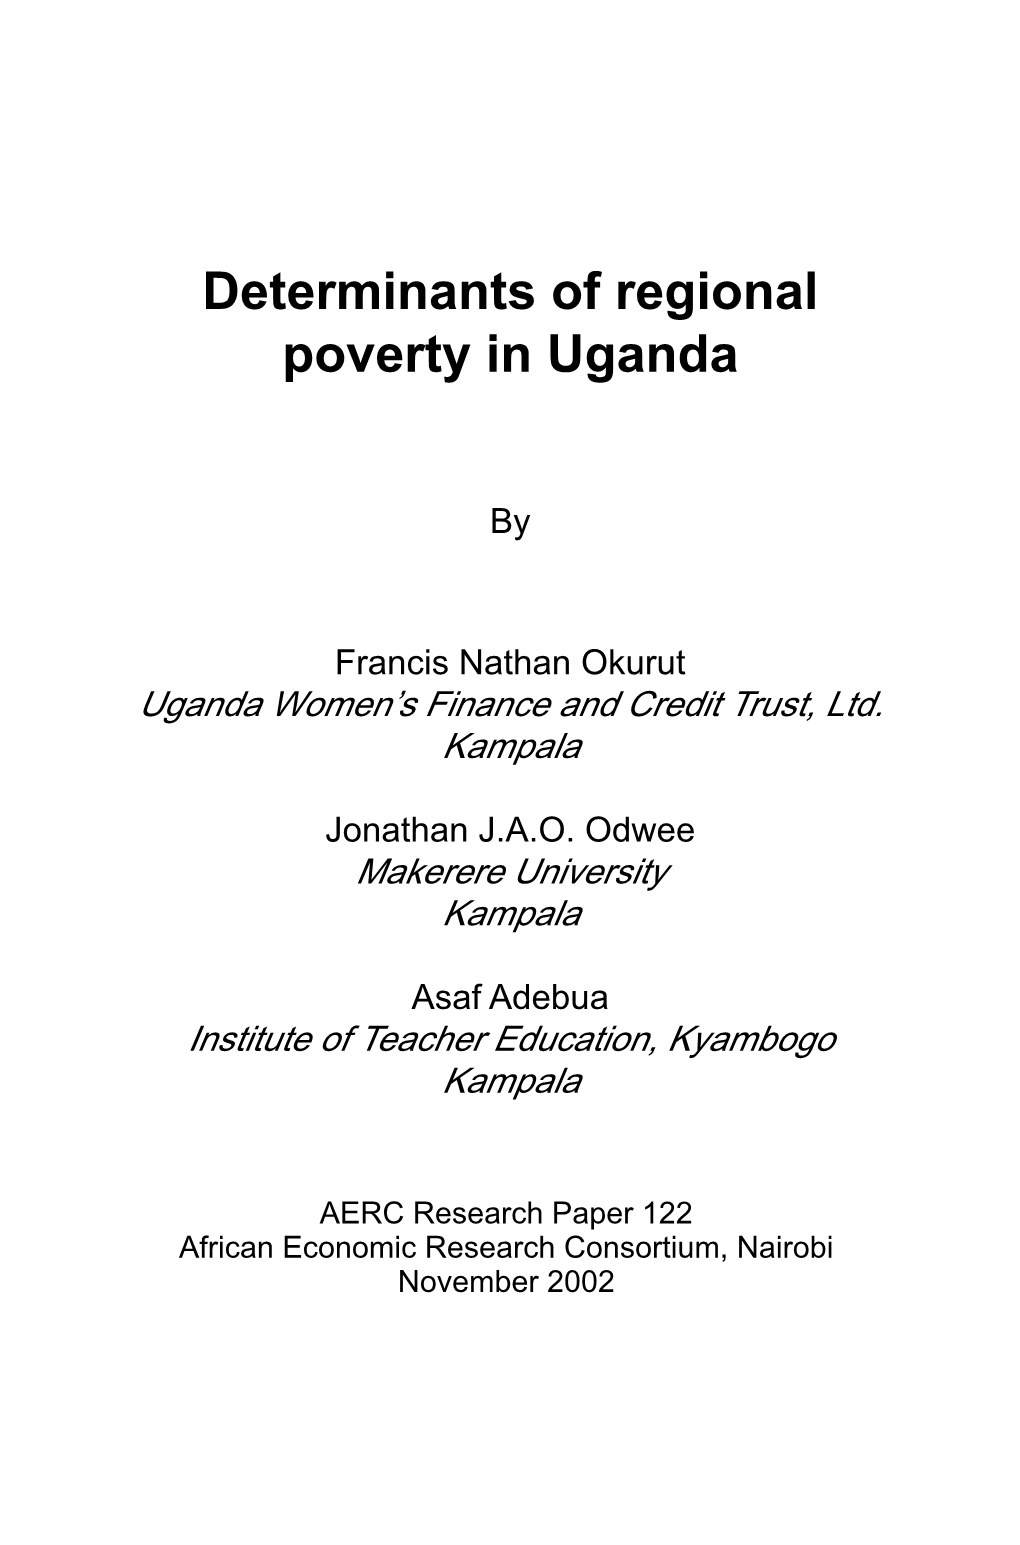 Determinants of Regional Poverty in Uganda